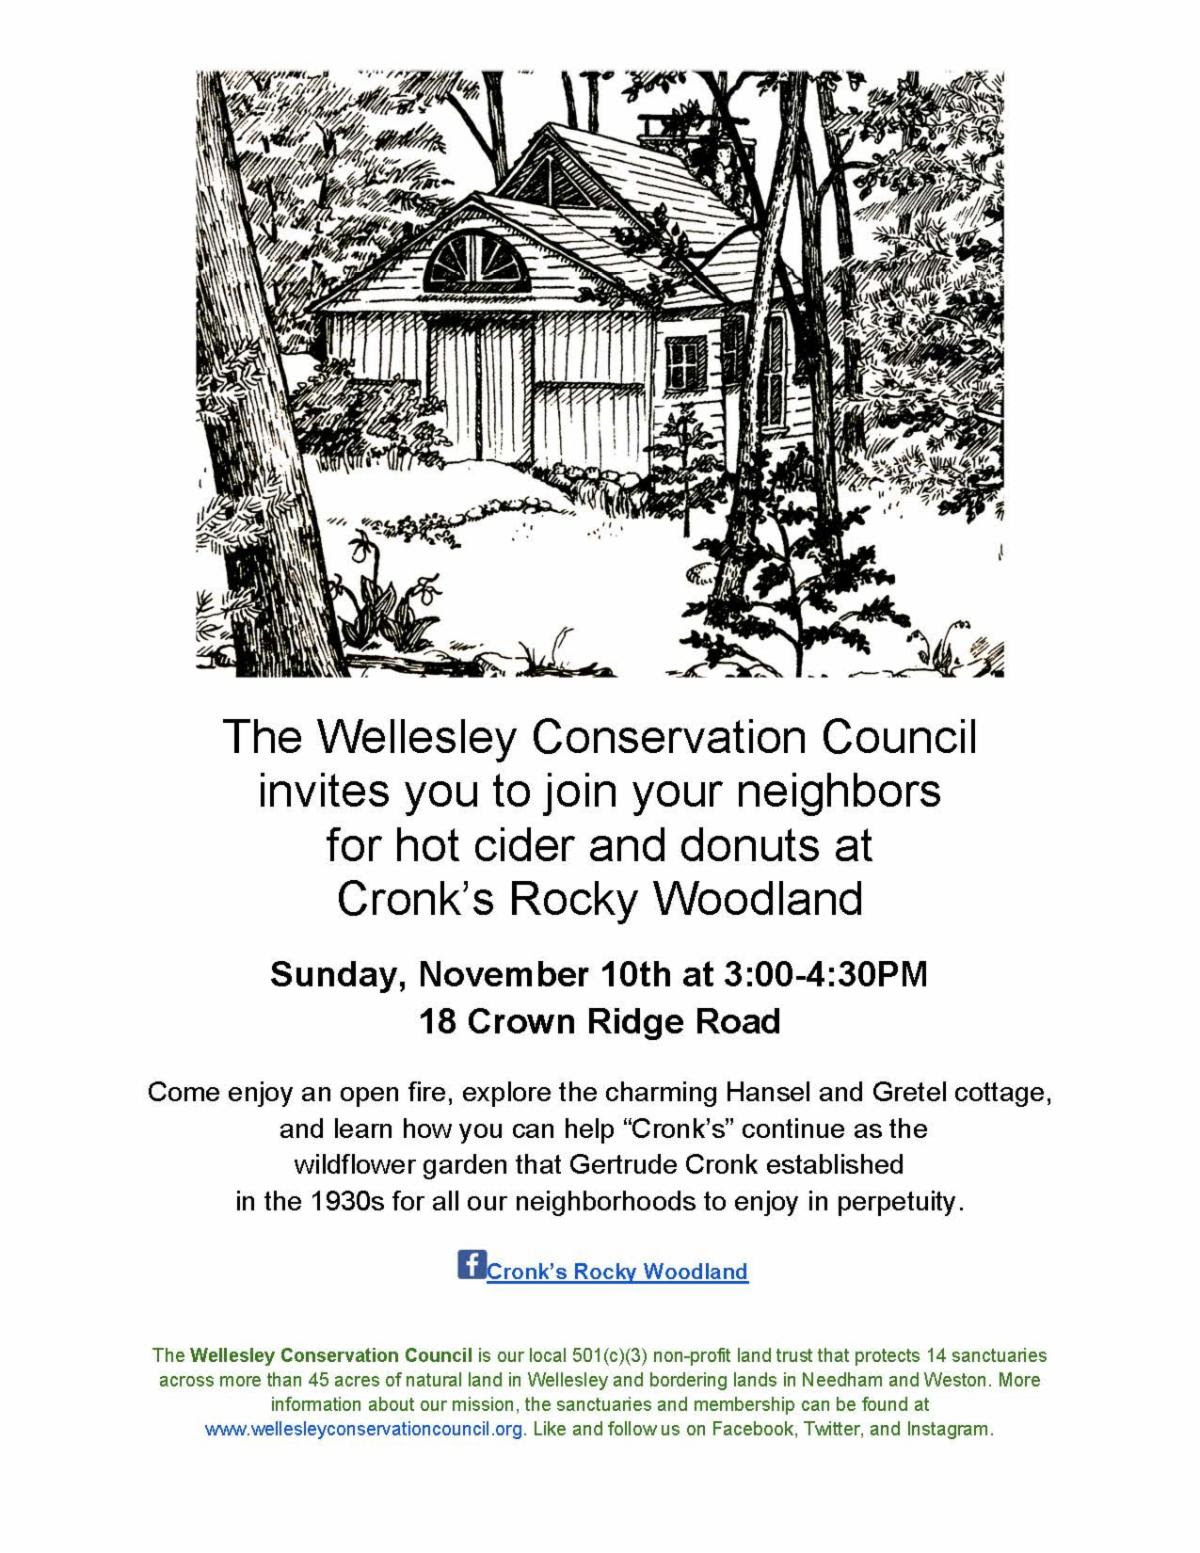 Cronk's Rocky Woodland, Wellesley